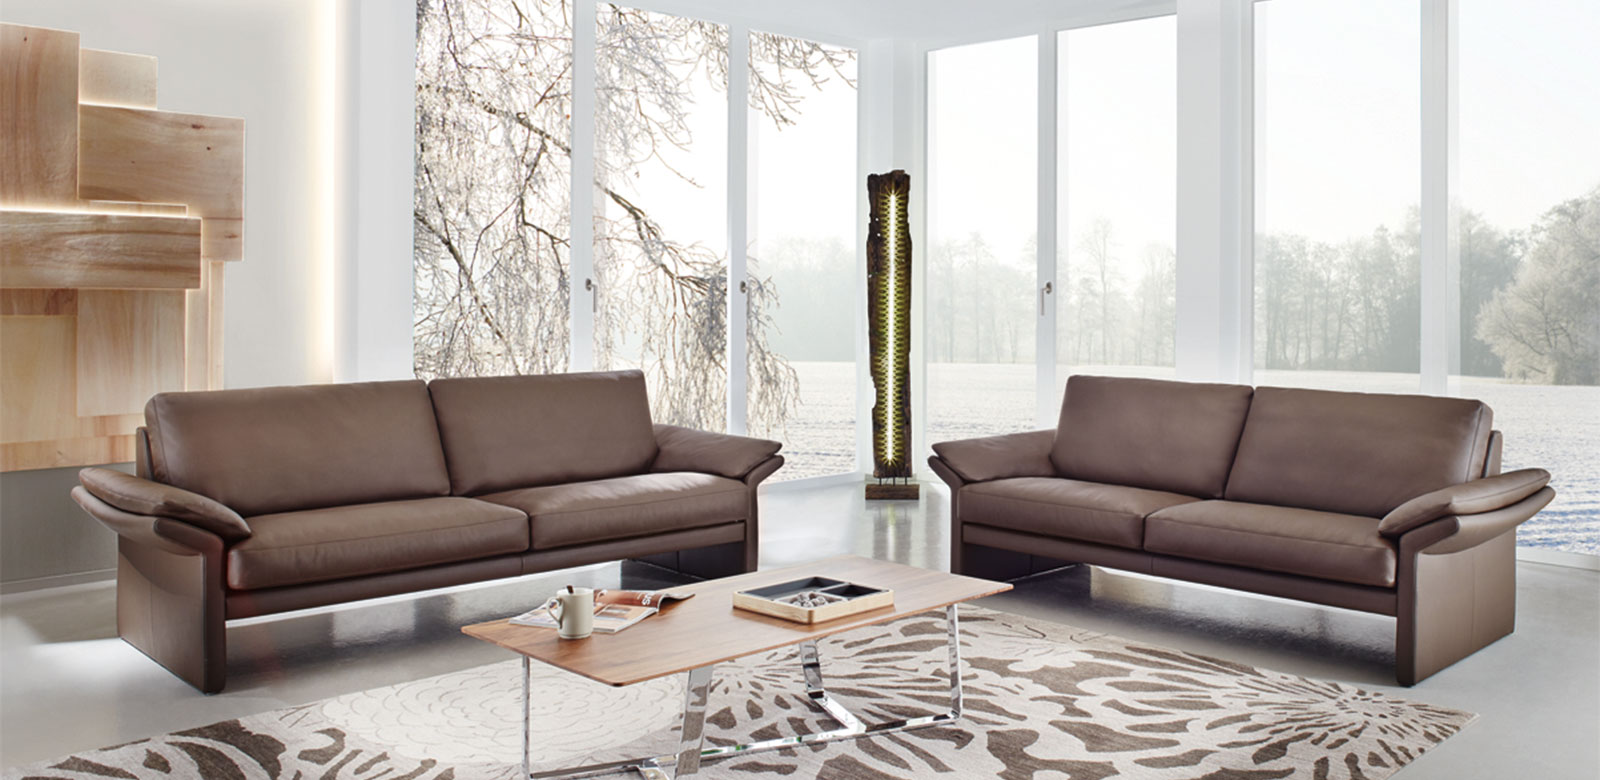 Zwei CL910 Sofas aus braunem Leder in modernem Wohnzimmer und Terrasse zum Wald